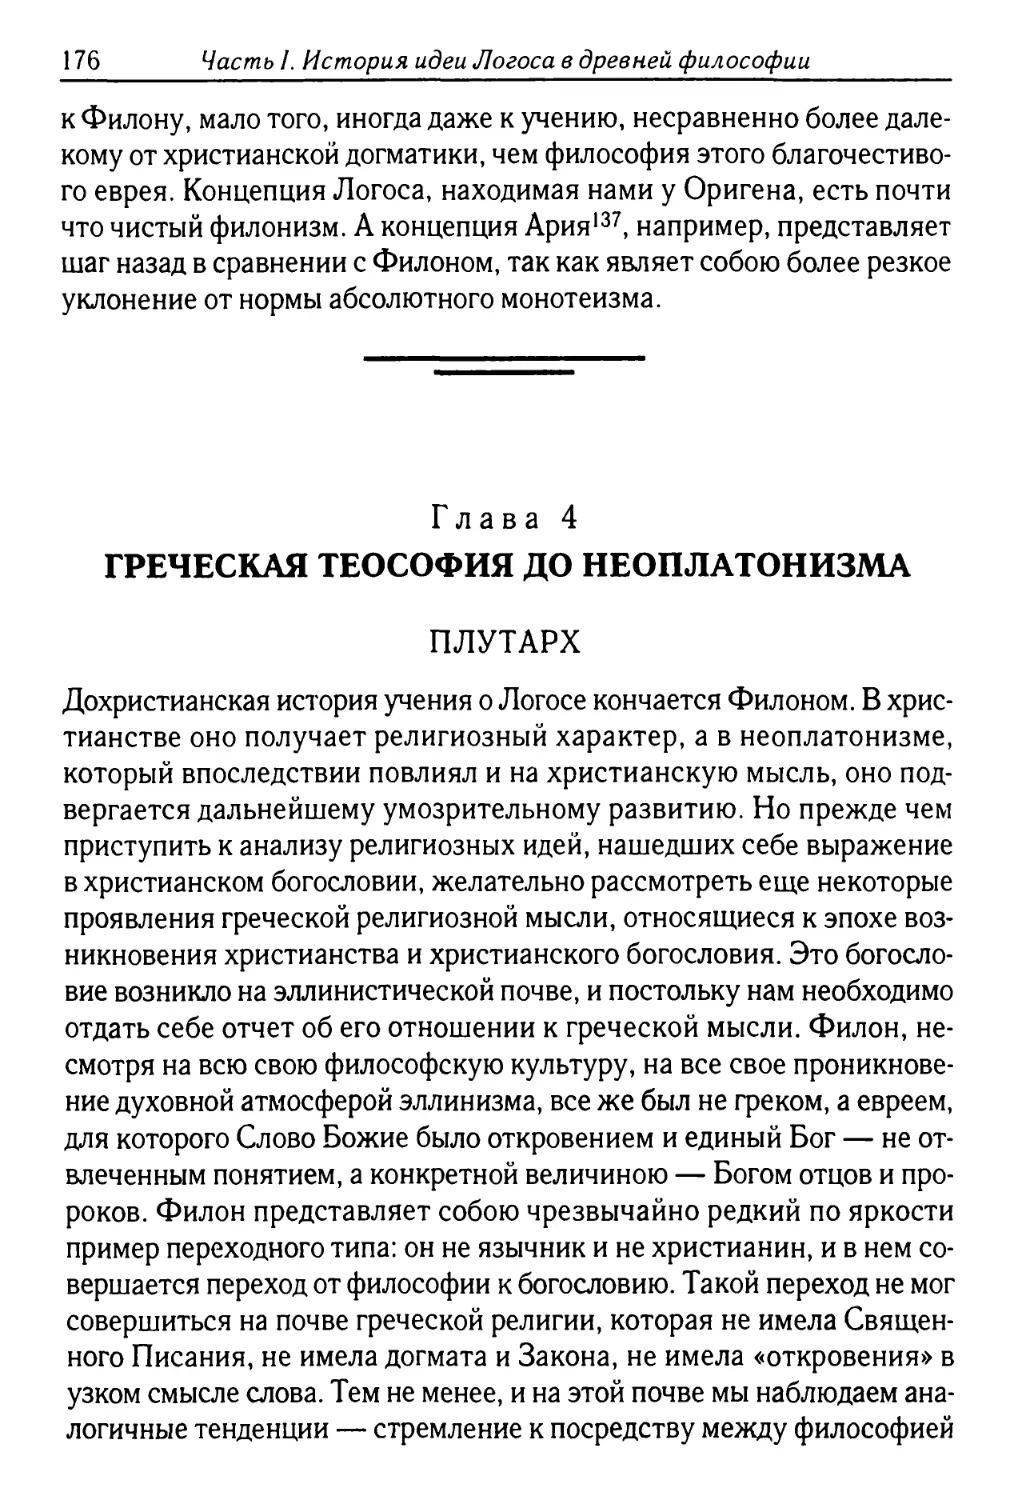 Глава 4. Греческая теософия до неоплатонизма
Плутарх